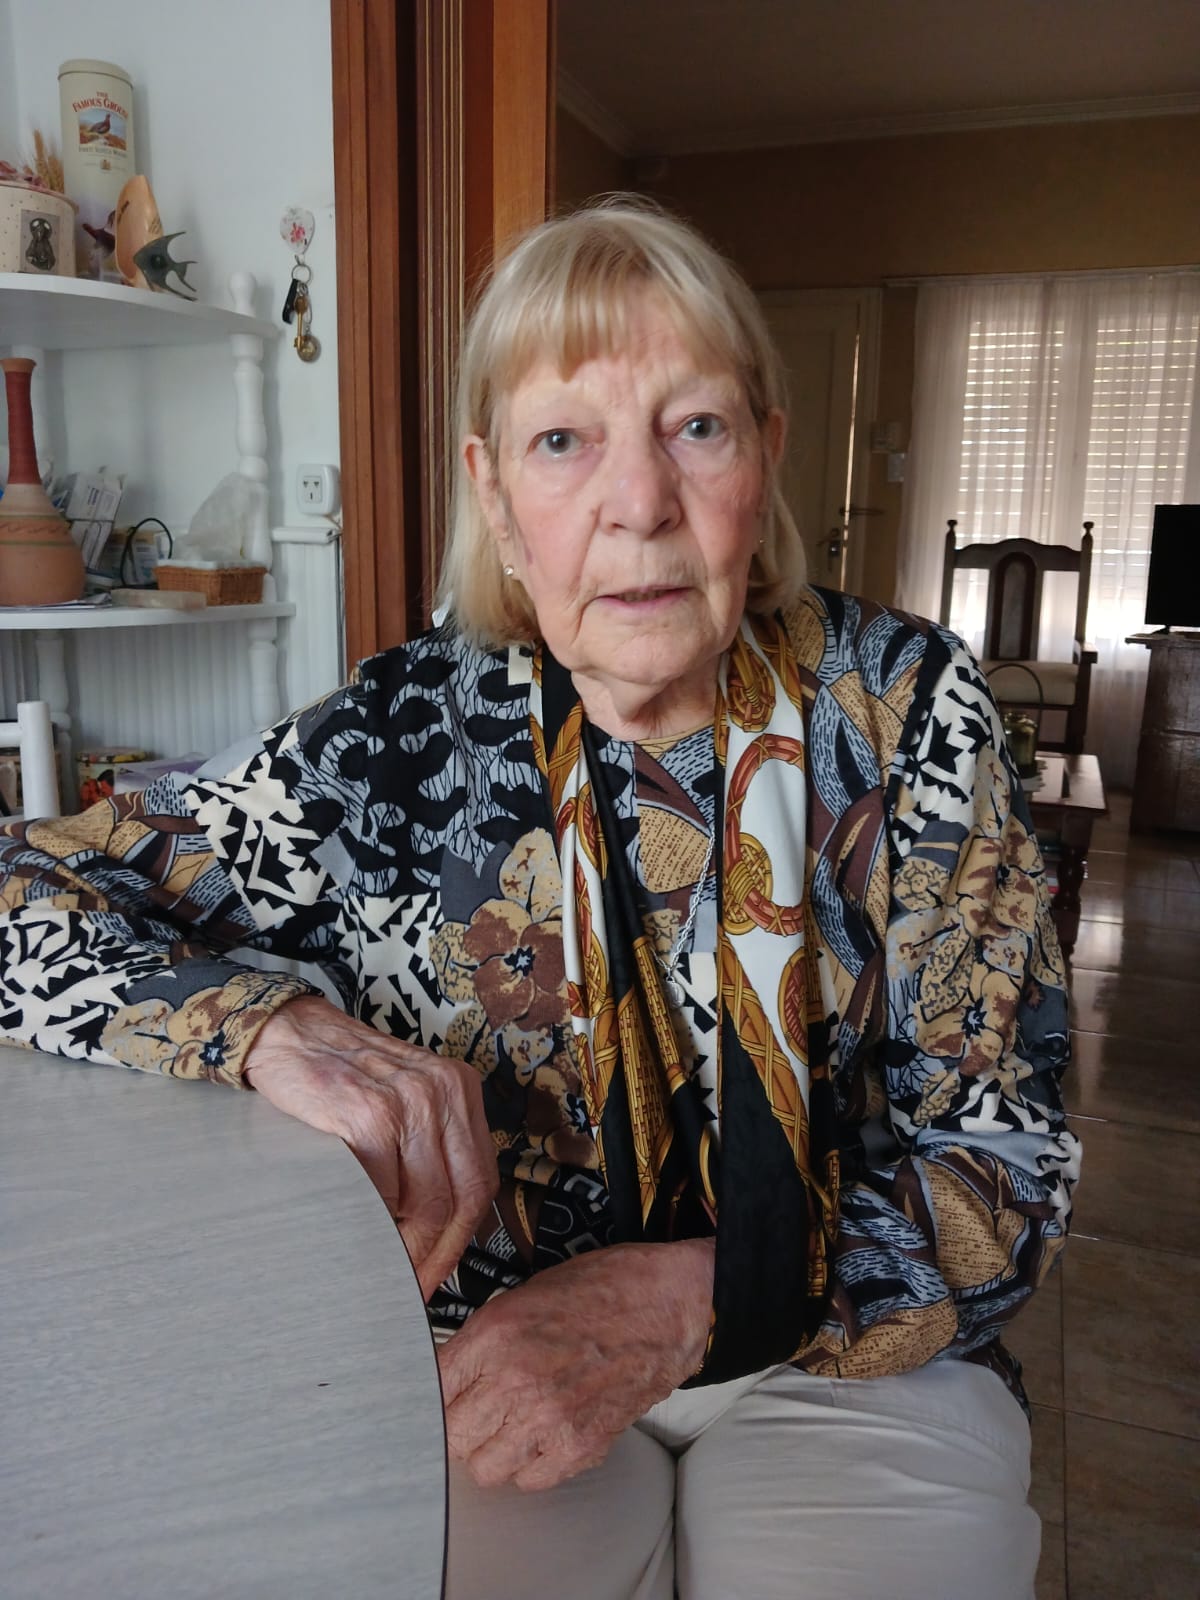 Tiene 83 años, la ataron, abofetearon y le robaron en su casa (video)